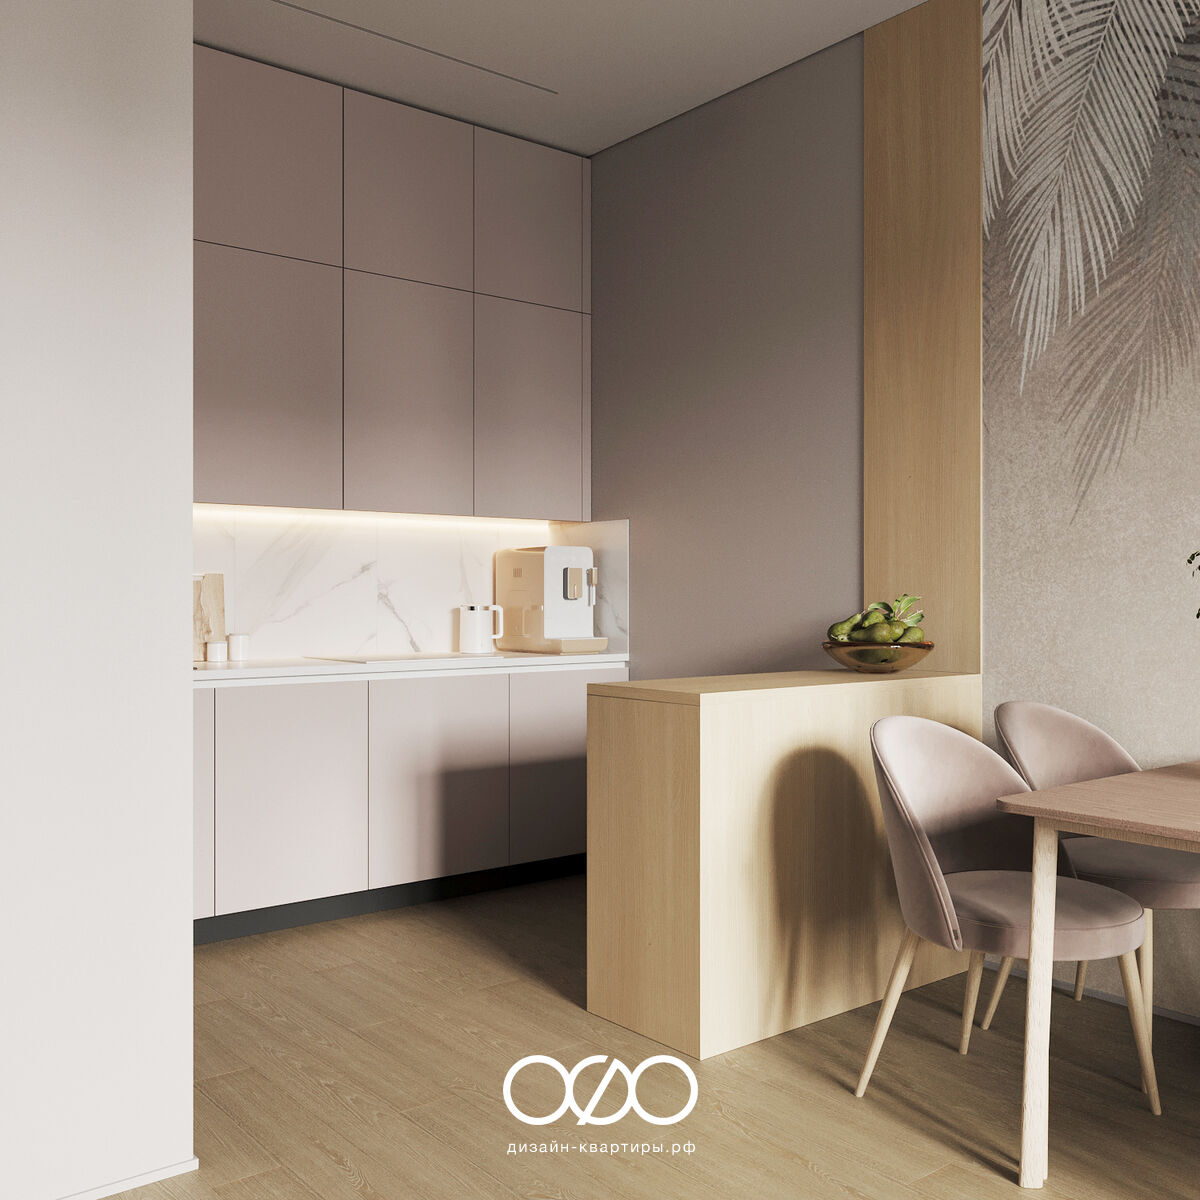 Дизайн-проект 2-комнатной квартиры 65 м2 в стиле современный минимализм. Москва, ЖК Nagatino i-land.